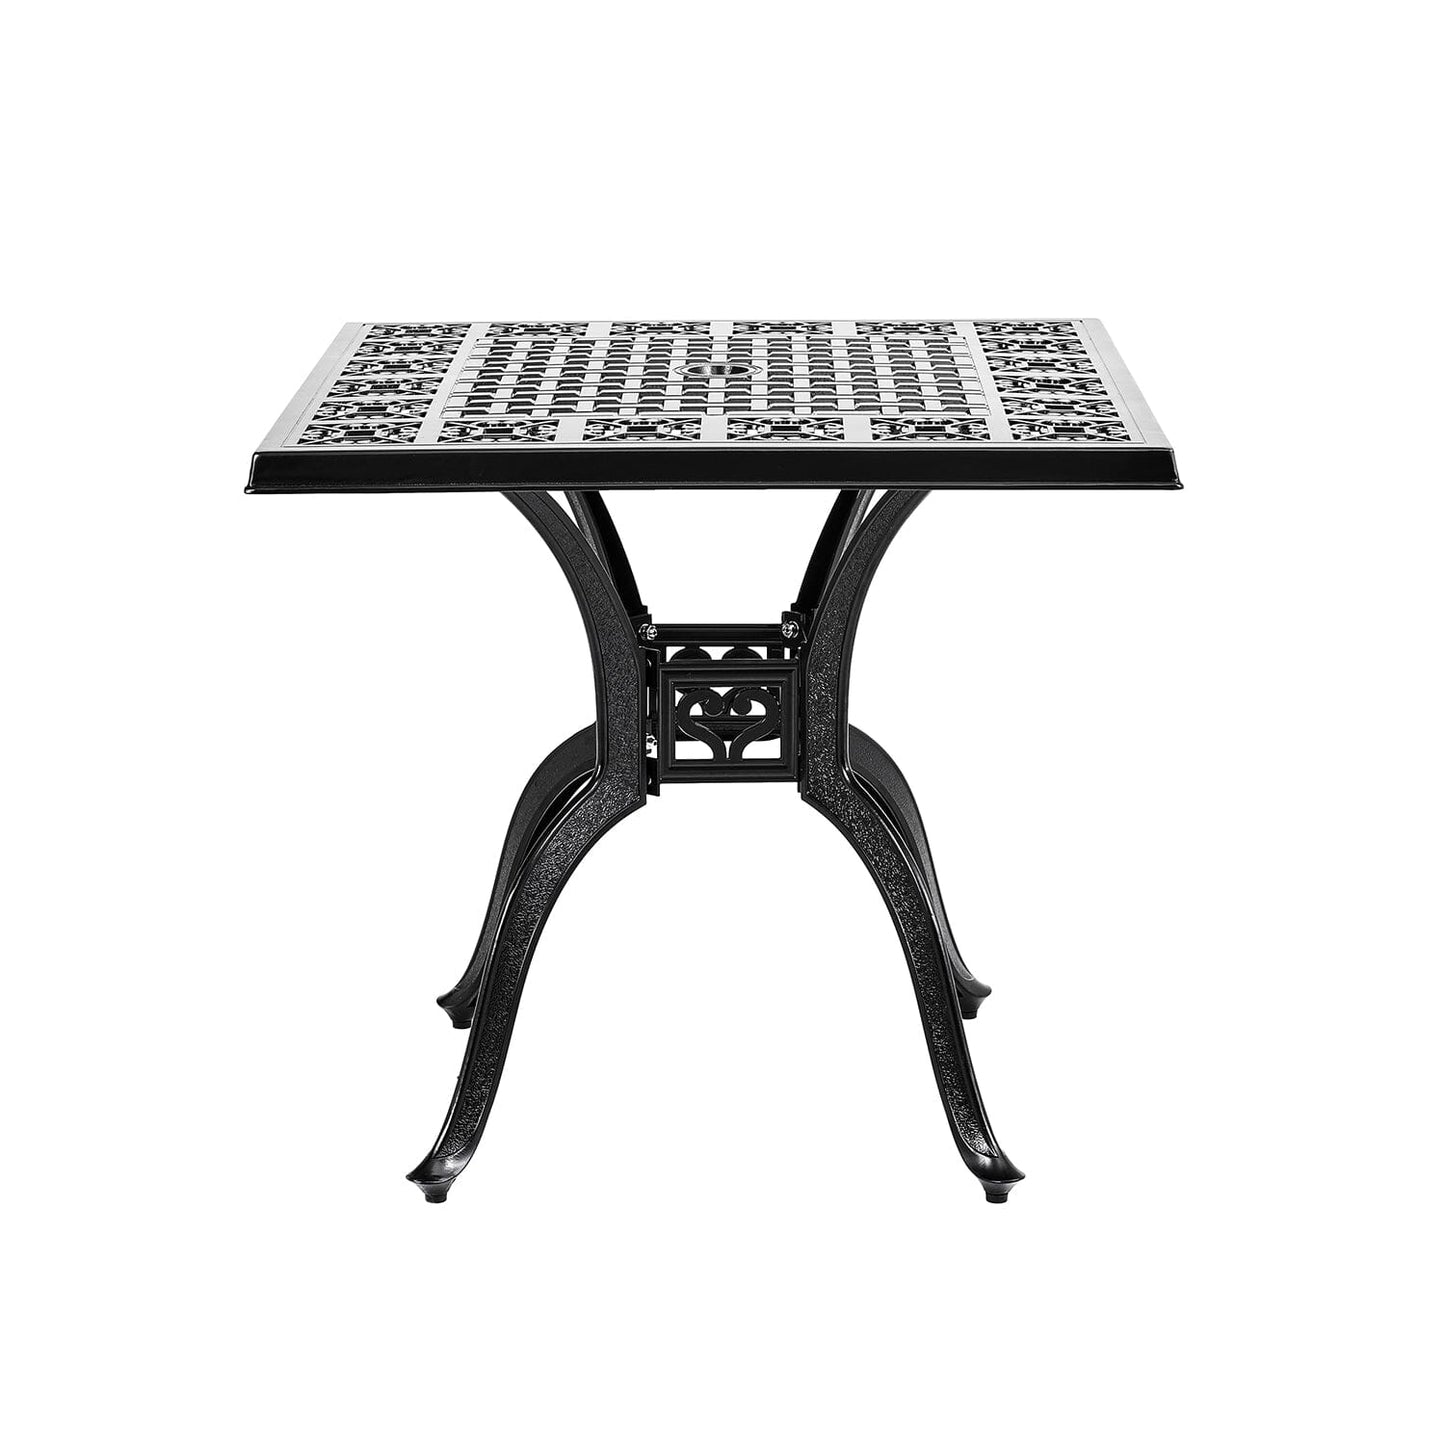 Black Cast Aluminium Square Outdoor Dining Table